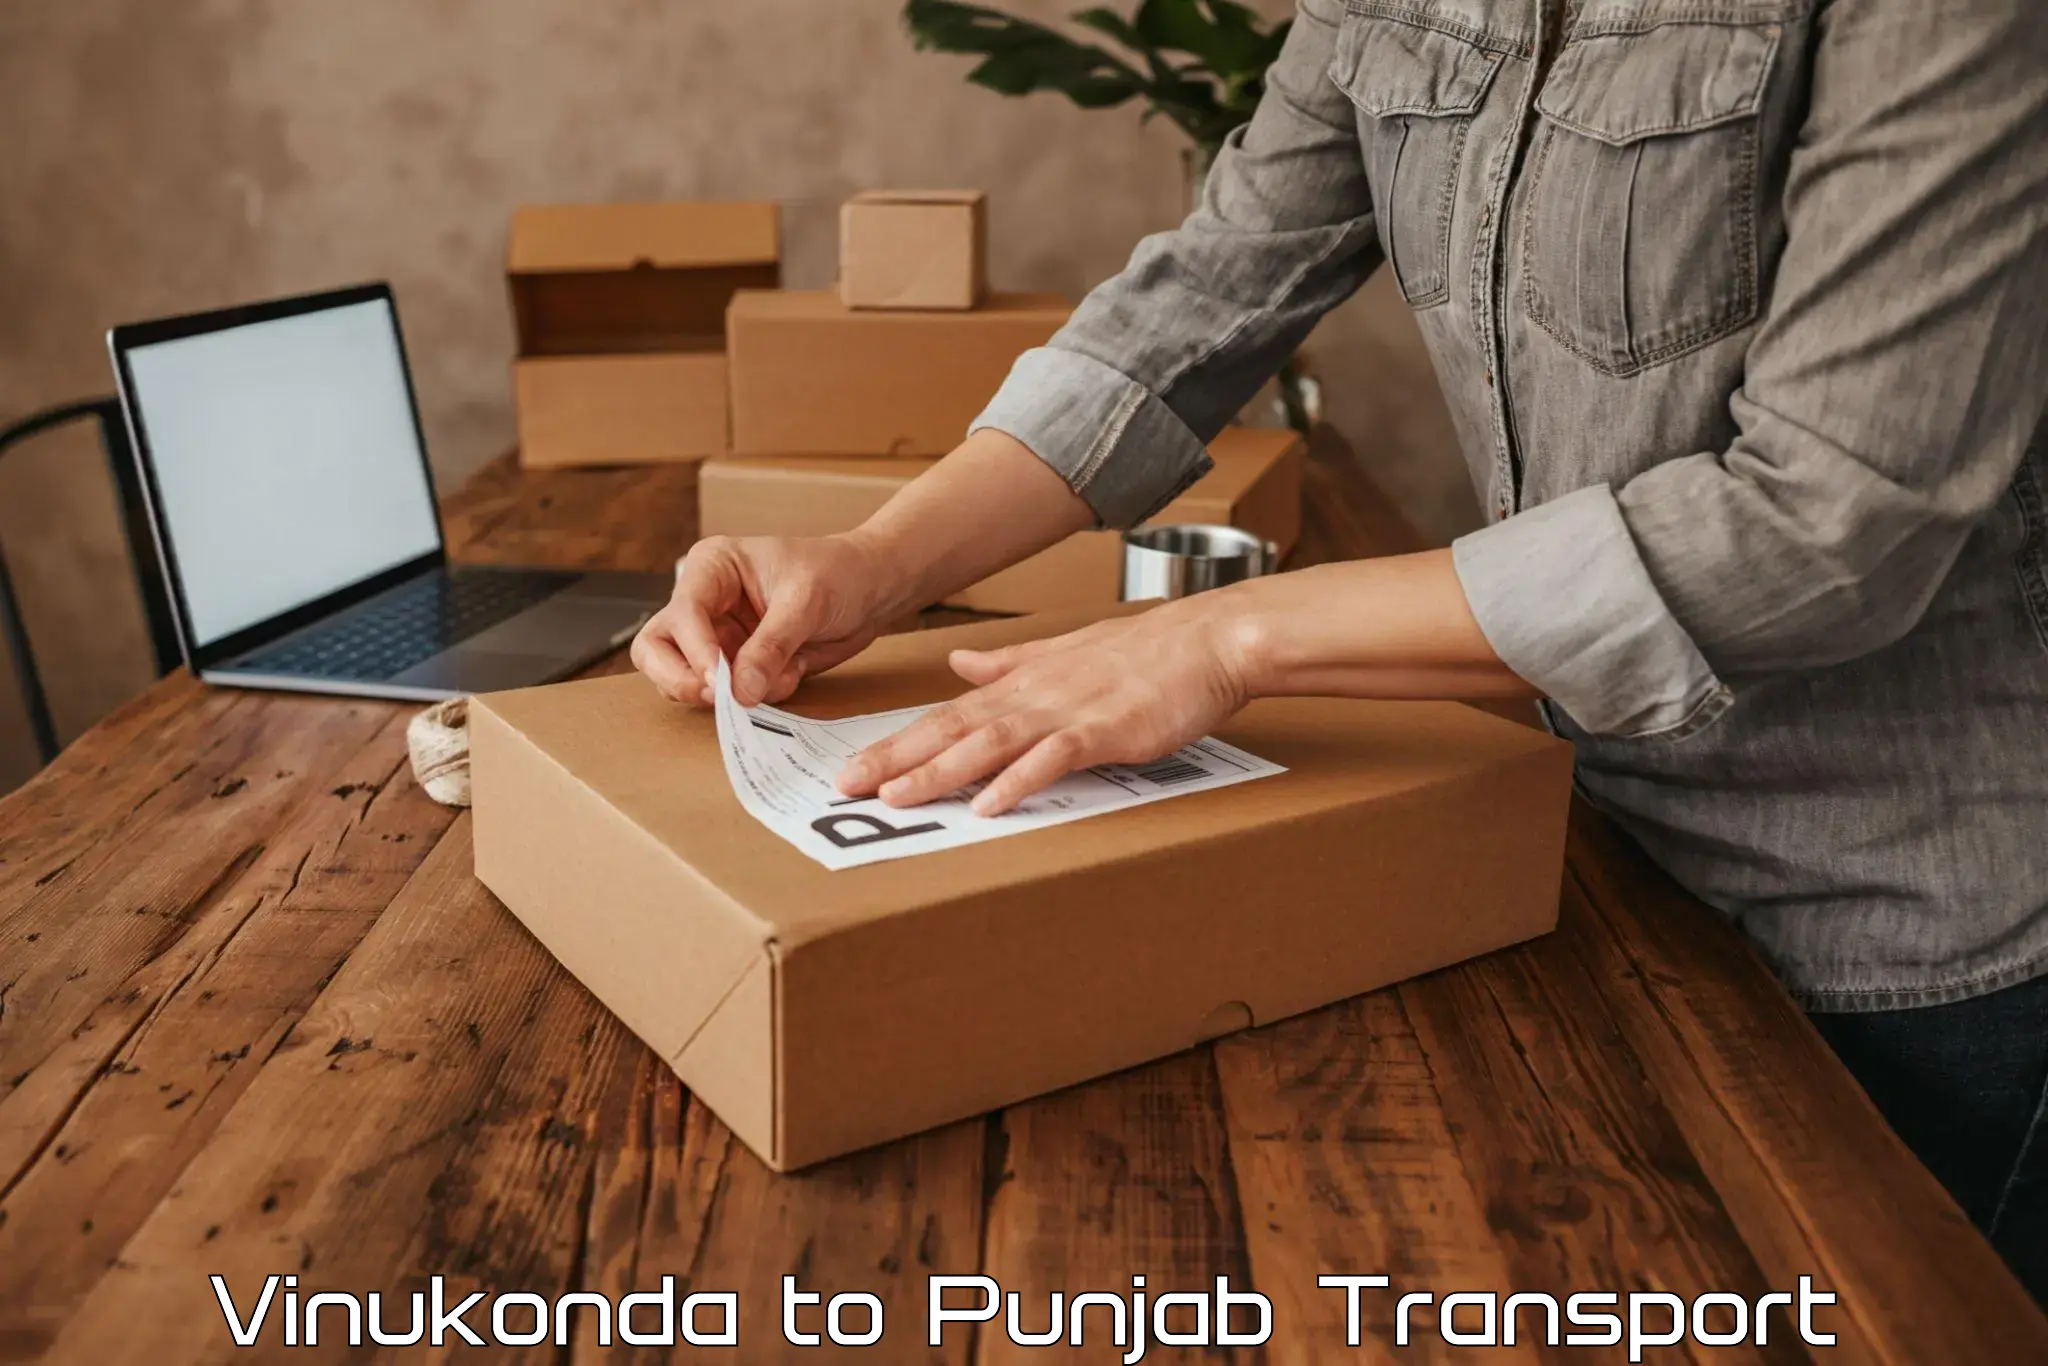 Pick up transport service Vinukonda to Begowal